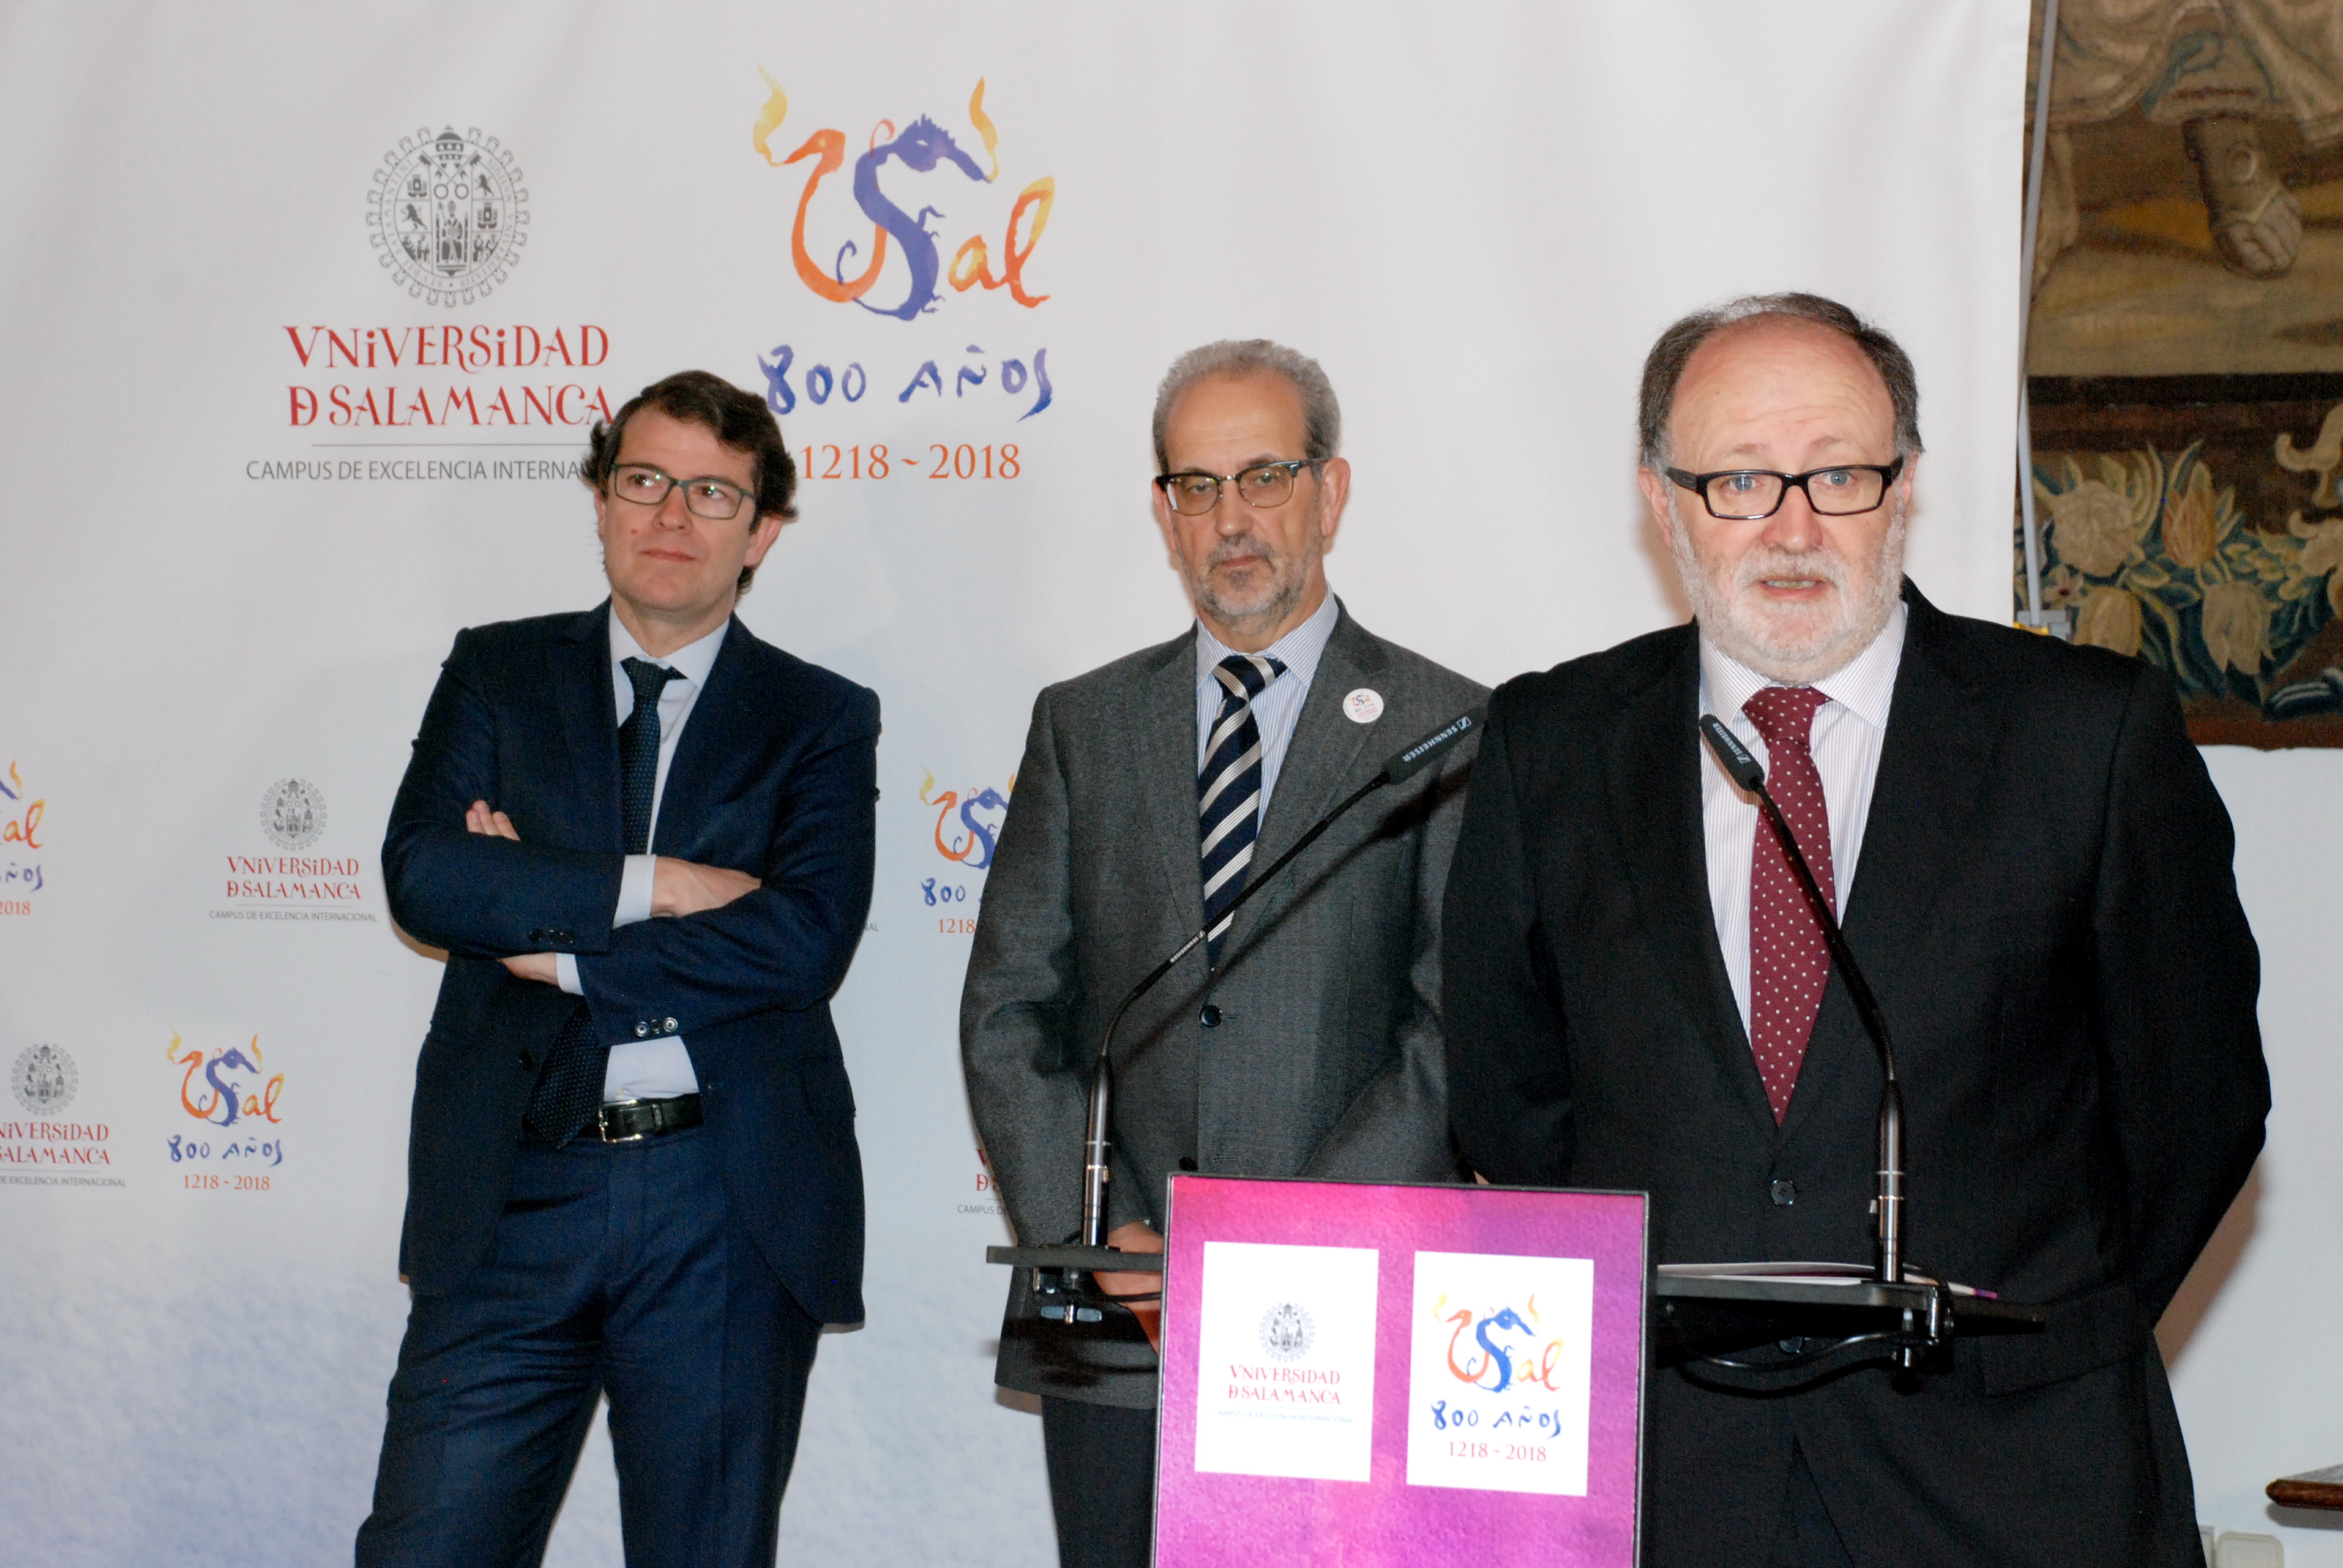 El Ayuntamiento apoya la conmemoración del VIII Centenario de la Universidad de Salamanca a través de diez líneas de actuación 